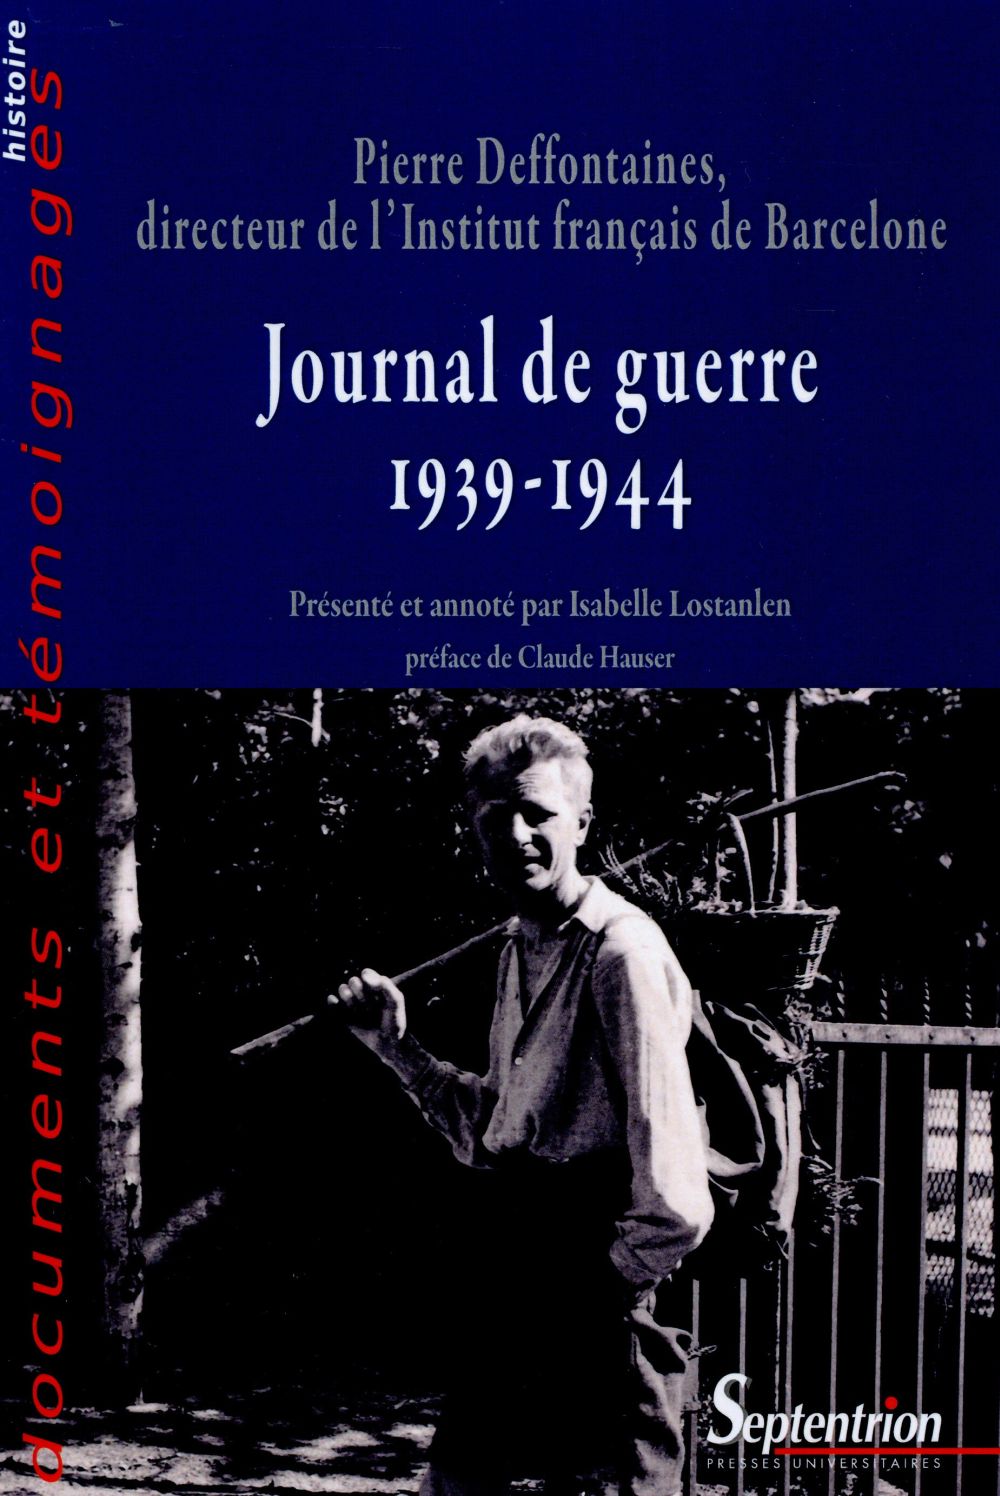 JOURNAL DE GUERRE (1939-1944) - PIERRE DEFFONTAINES, DIRECTEUR DE L''INSTITUT FRANCAIS DE BARCELONE